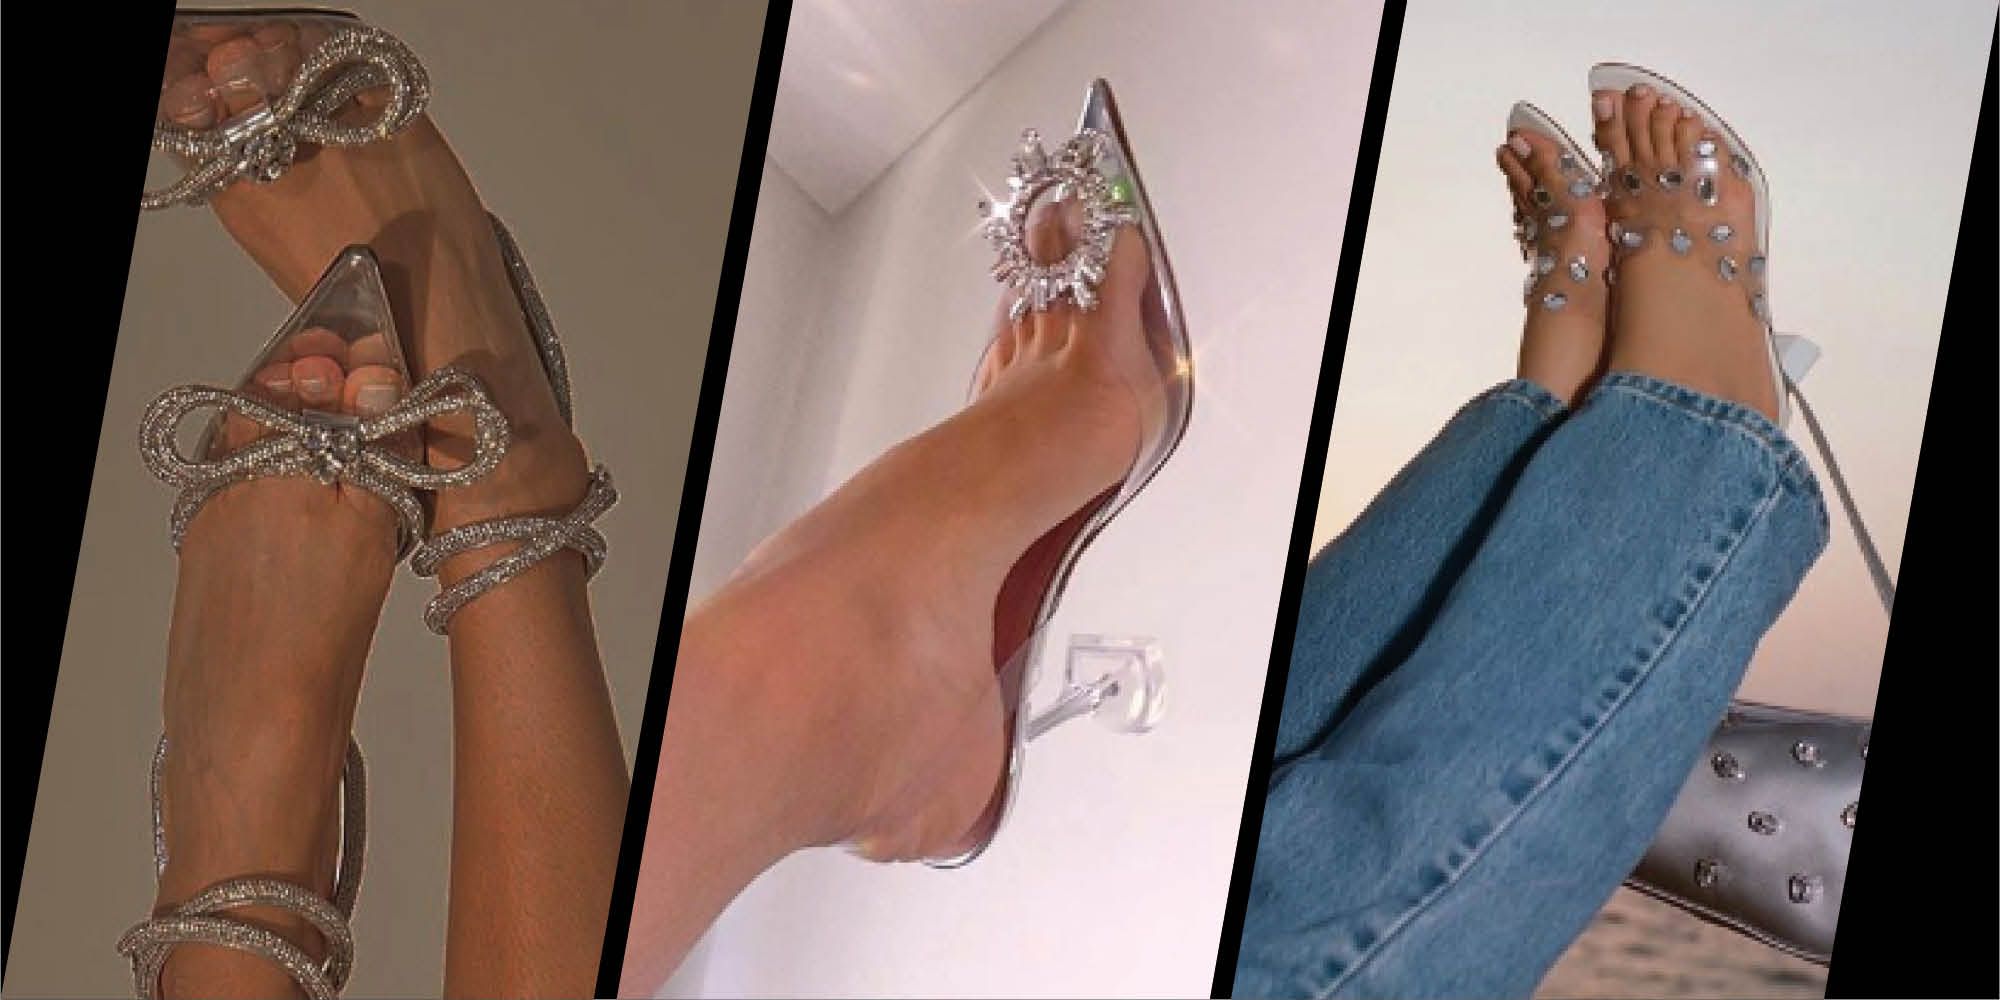 See Cinderella's Slipper Get High-Fashion Makeover